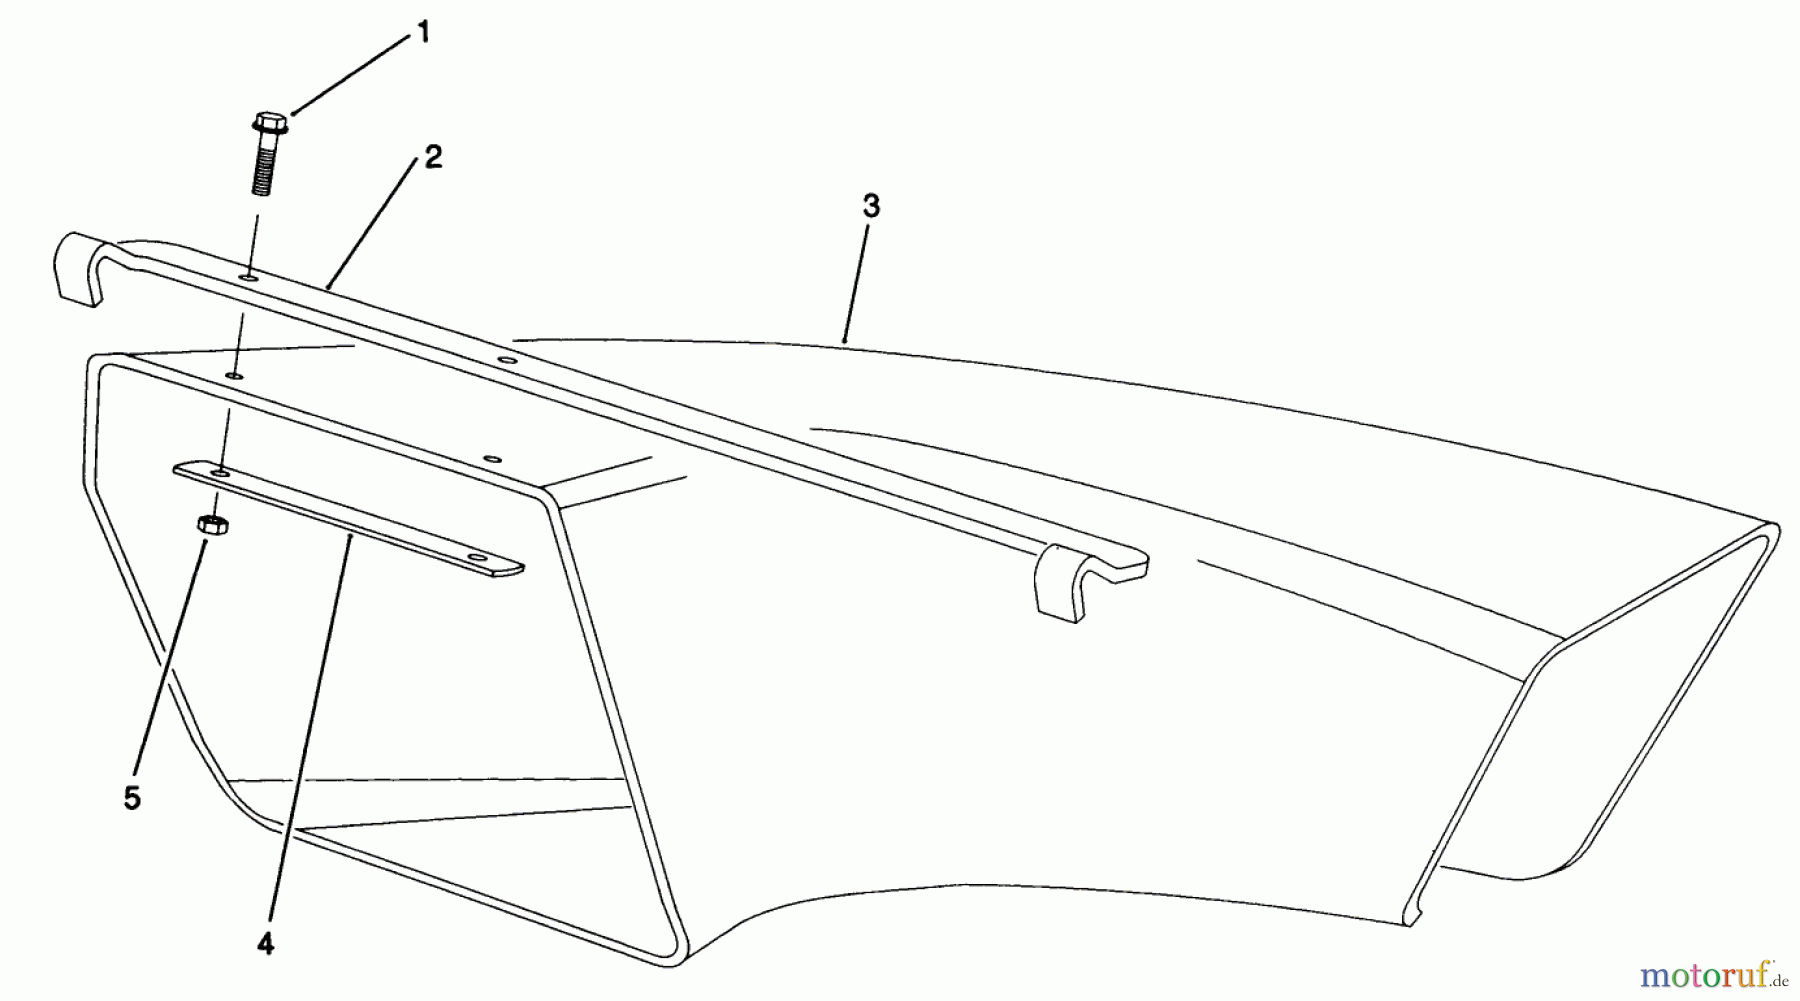  Toro Neu Mowers, Walk-Behind Seite 2 22685 - Toro Lawnmower, 1991 (1000001-1999999) SIDE DISCHARGE CHUTE MODEL NO. 59112 (OPTIONAL)